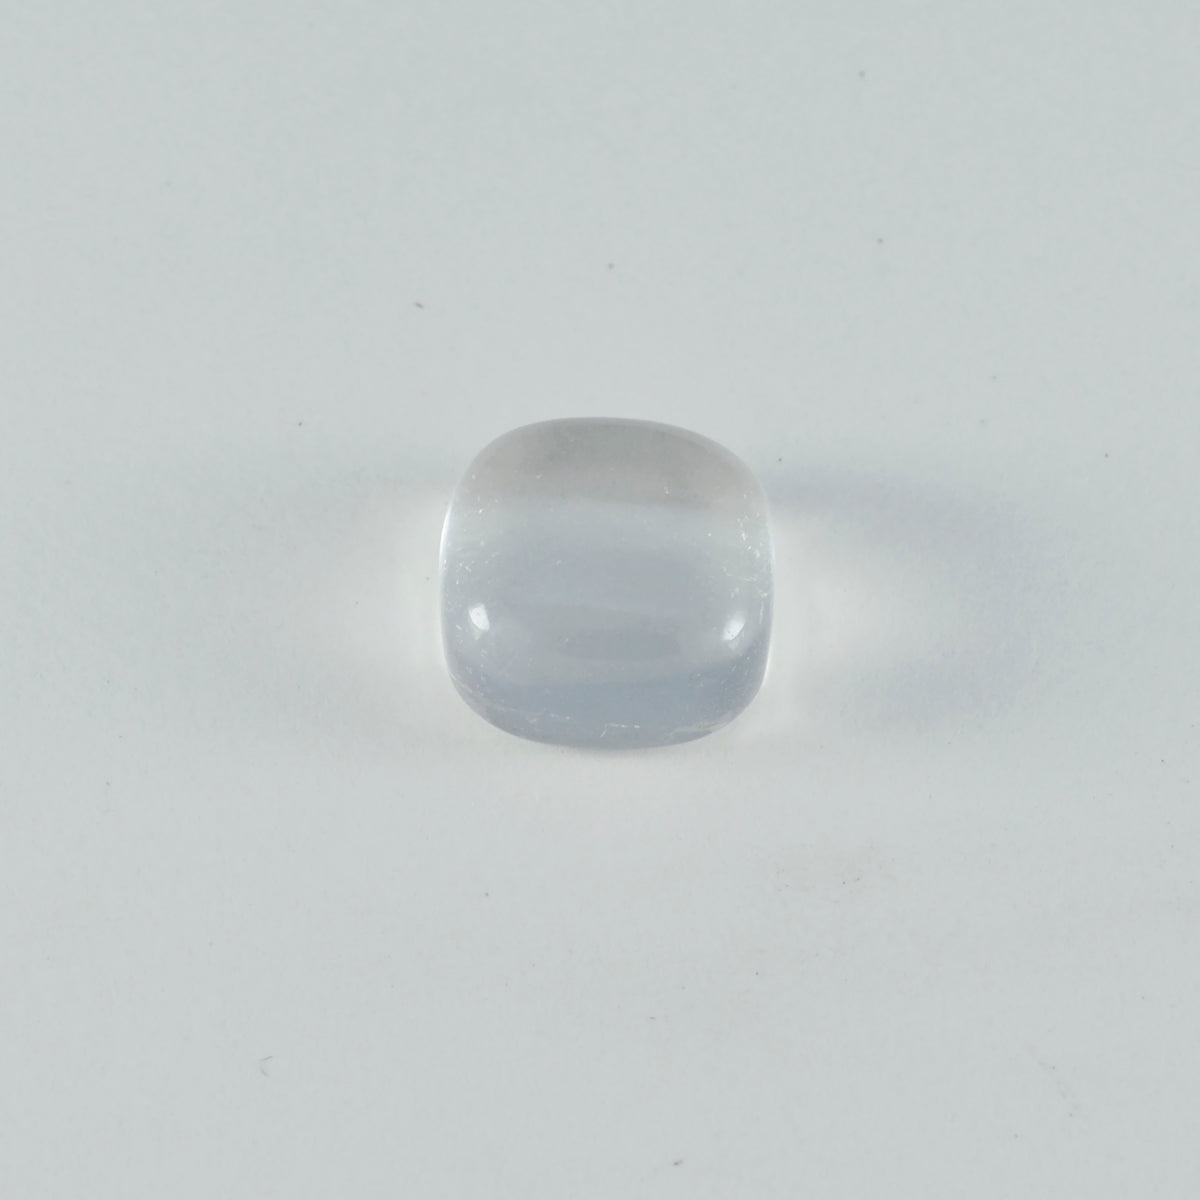 riyogems 1 шт. кабошон из белого кристалла кварца 10x10 мм в форме подушки, красивый качественный свободный драгоценный камень